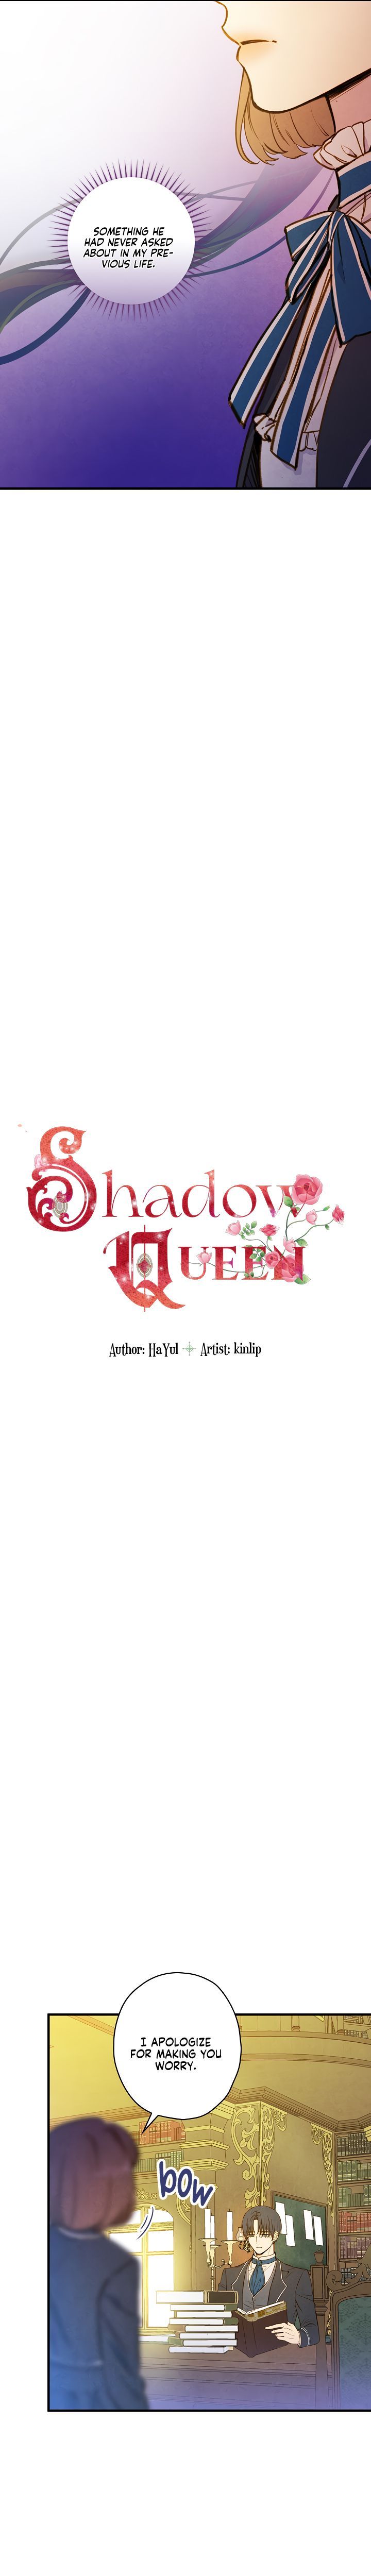 shadow_queen_46_2